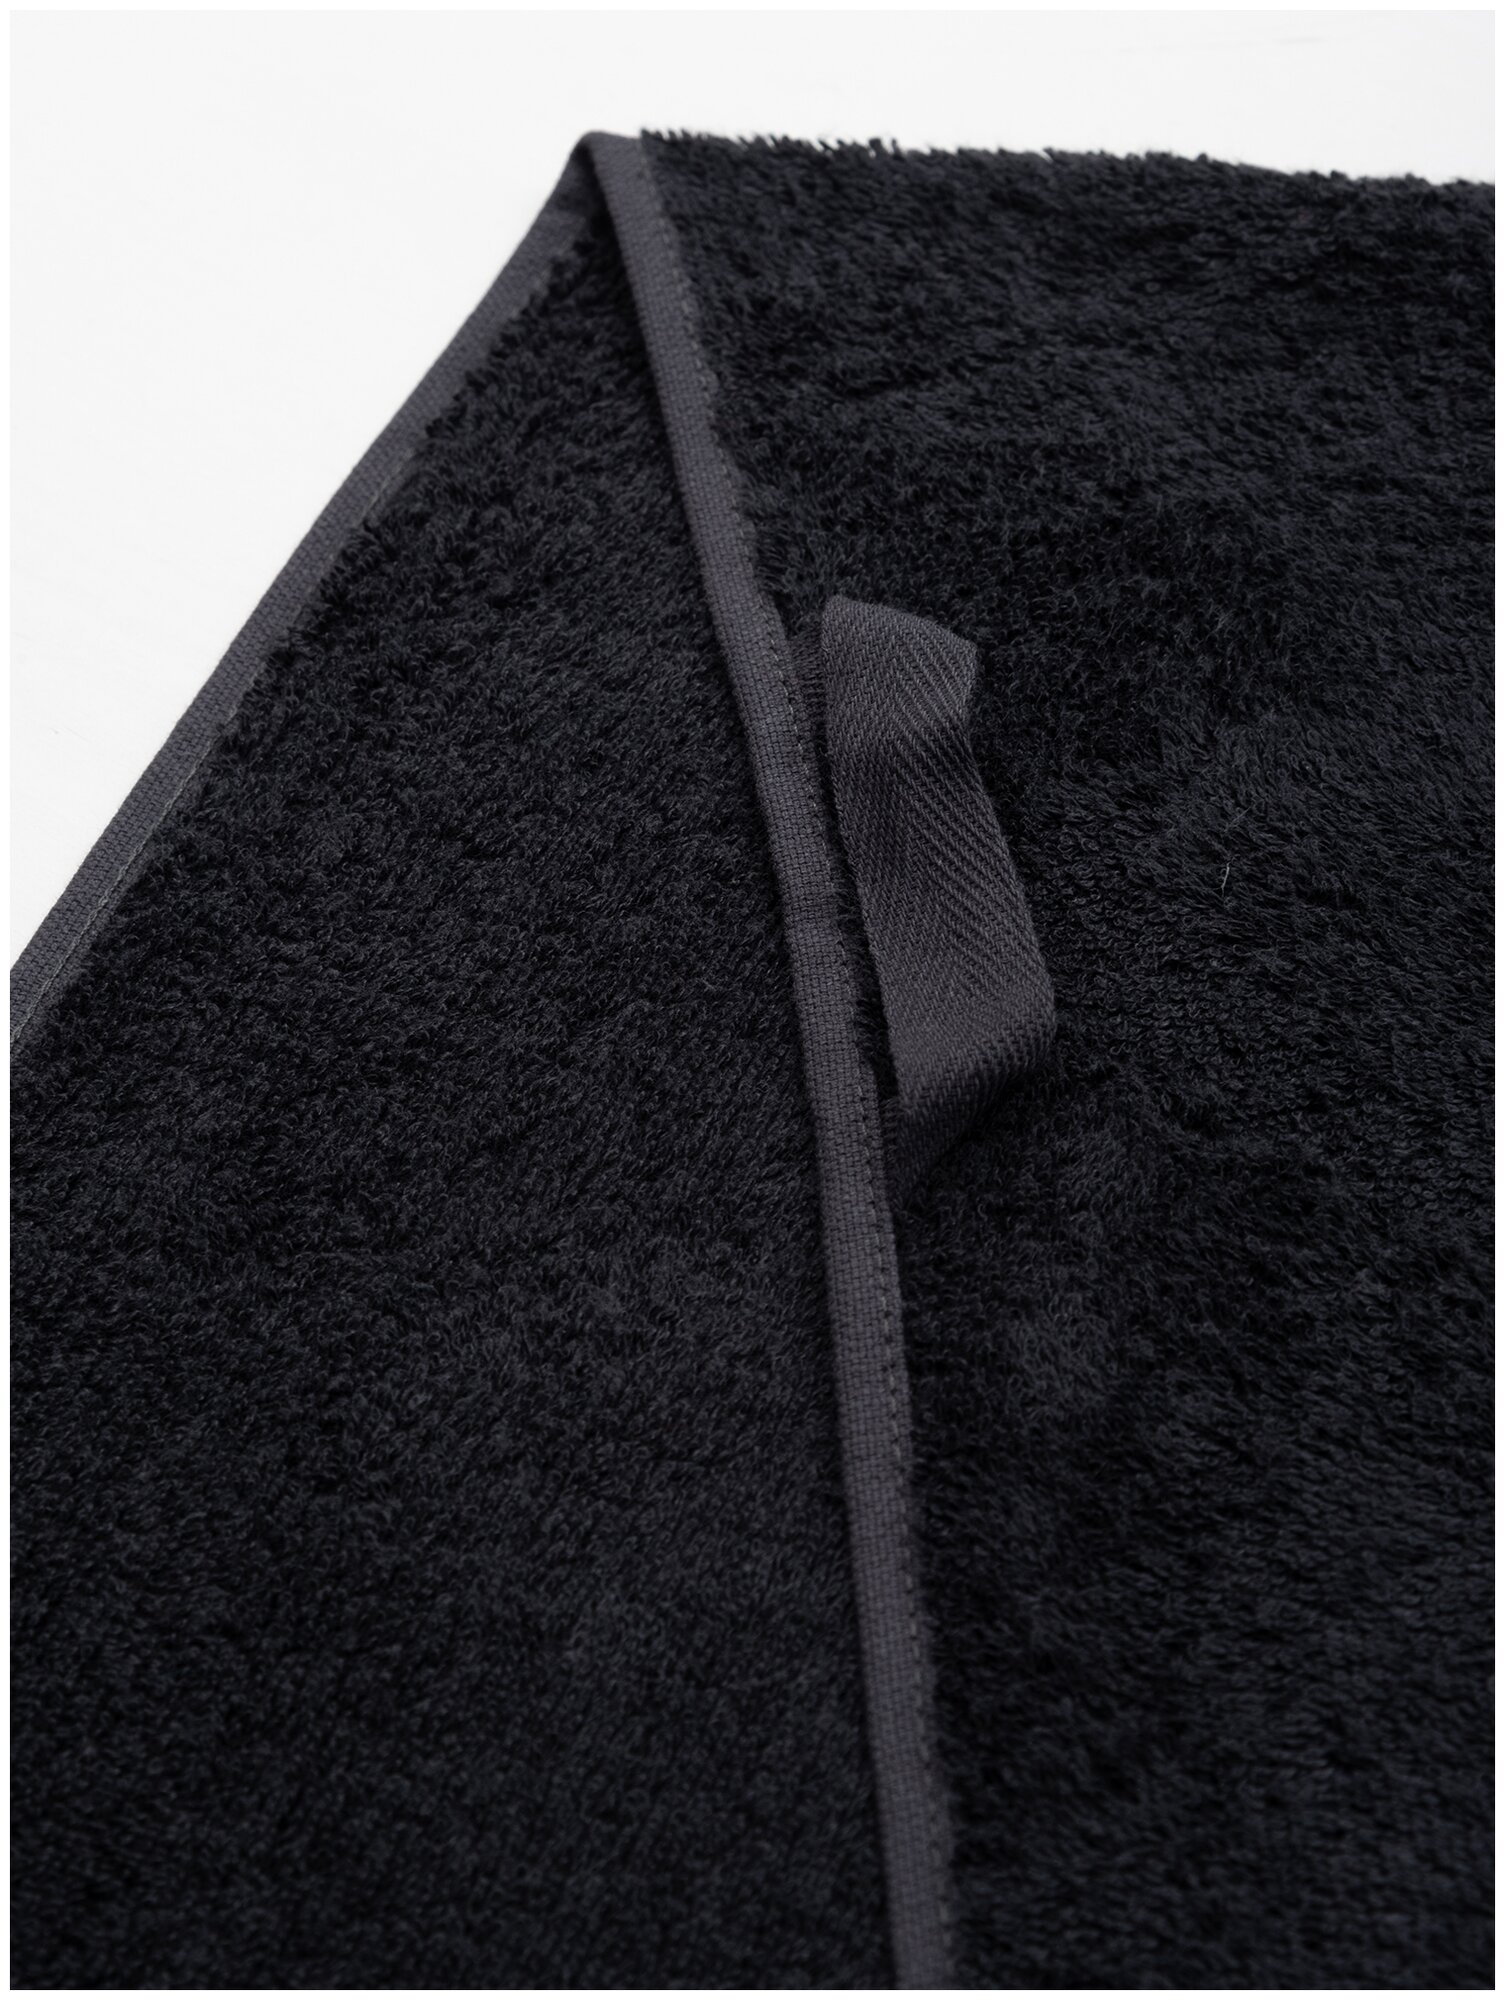 Полотенце махровое для лица и рук, Донецкая мануфактура, Вивиан, 50Х100 см, цвет: черный оникс, 100% хлопок - фотография № 4